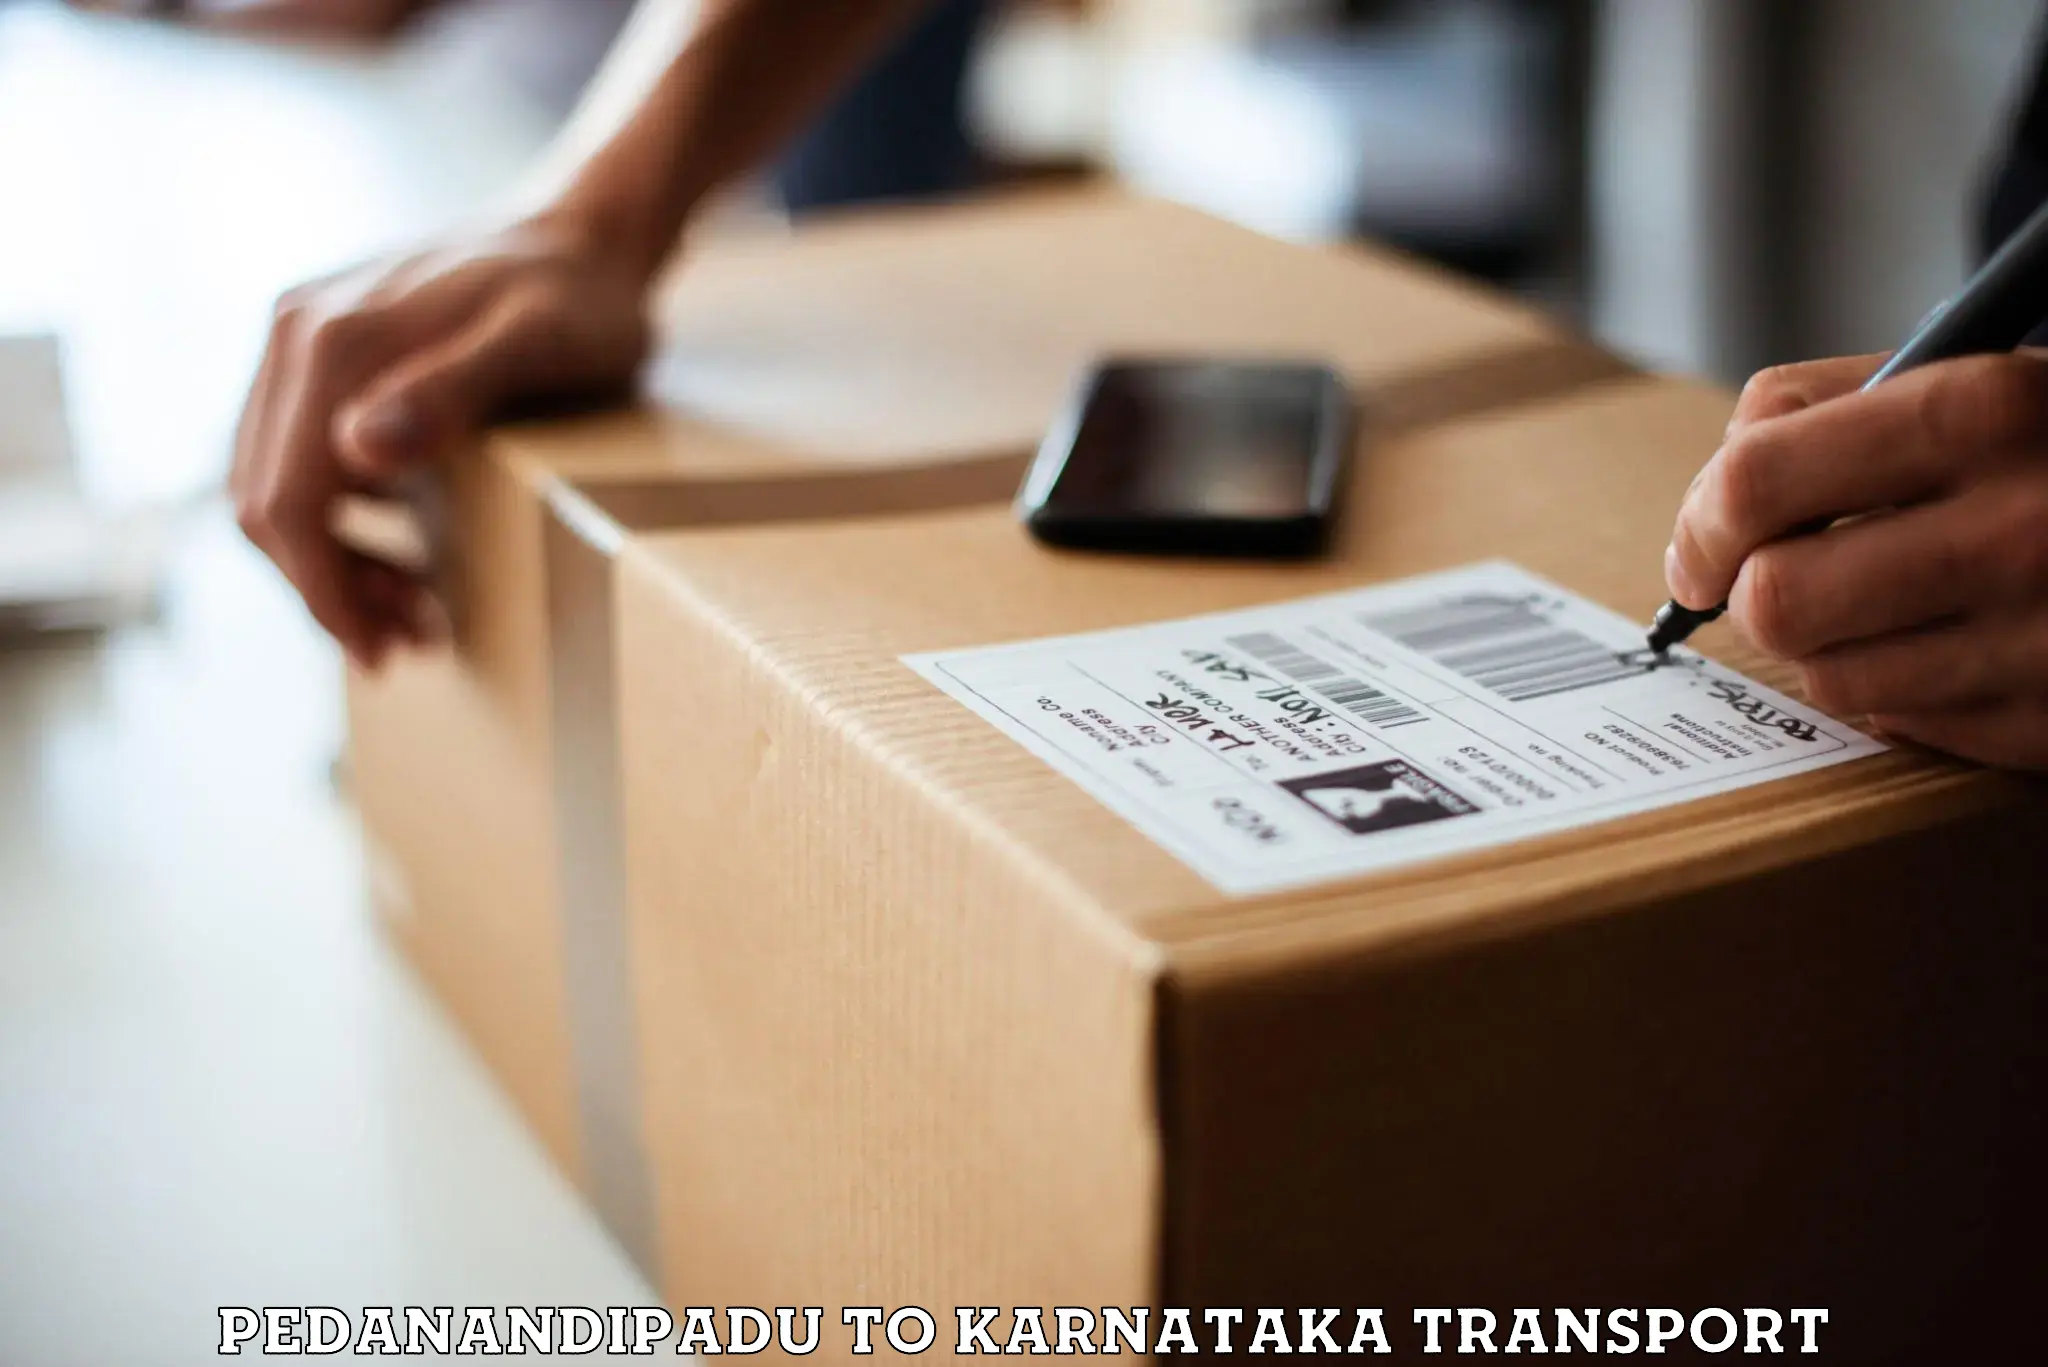 Goods delivery service Pedanandipadu to Yenepoya Mangalore